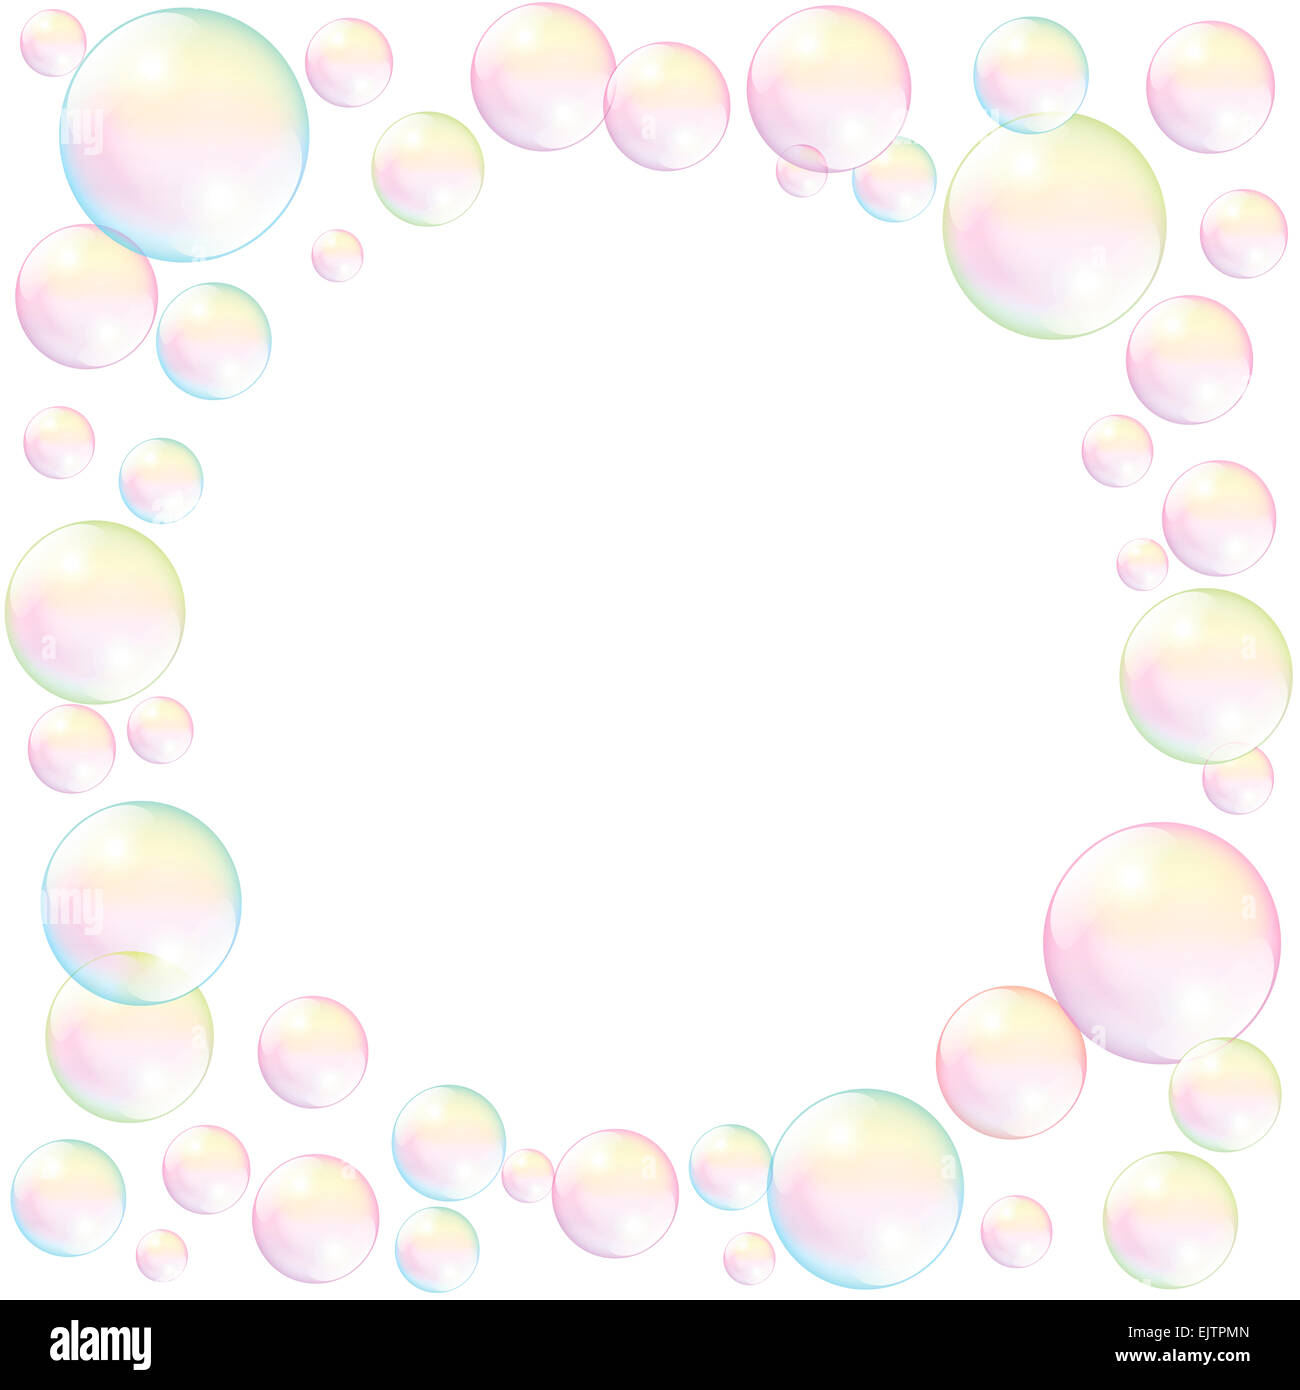 Des bulles de savon avec de l'espace vide à combler dans tout texte ou image. Illustration sur fond blanc. Banque D'Images